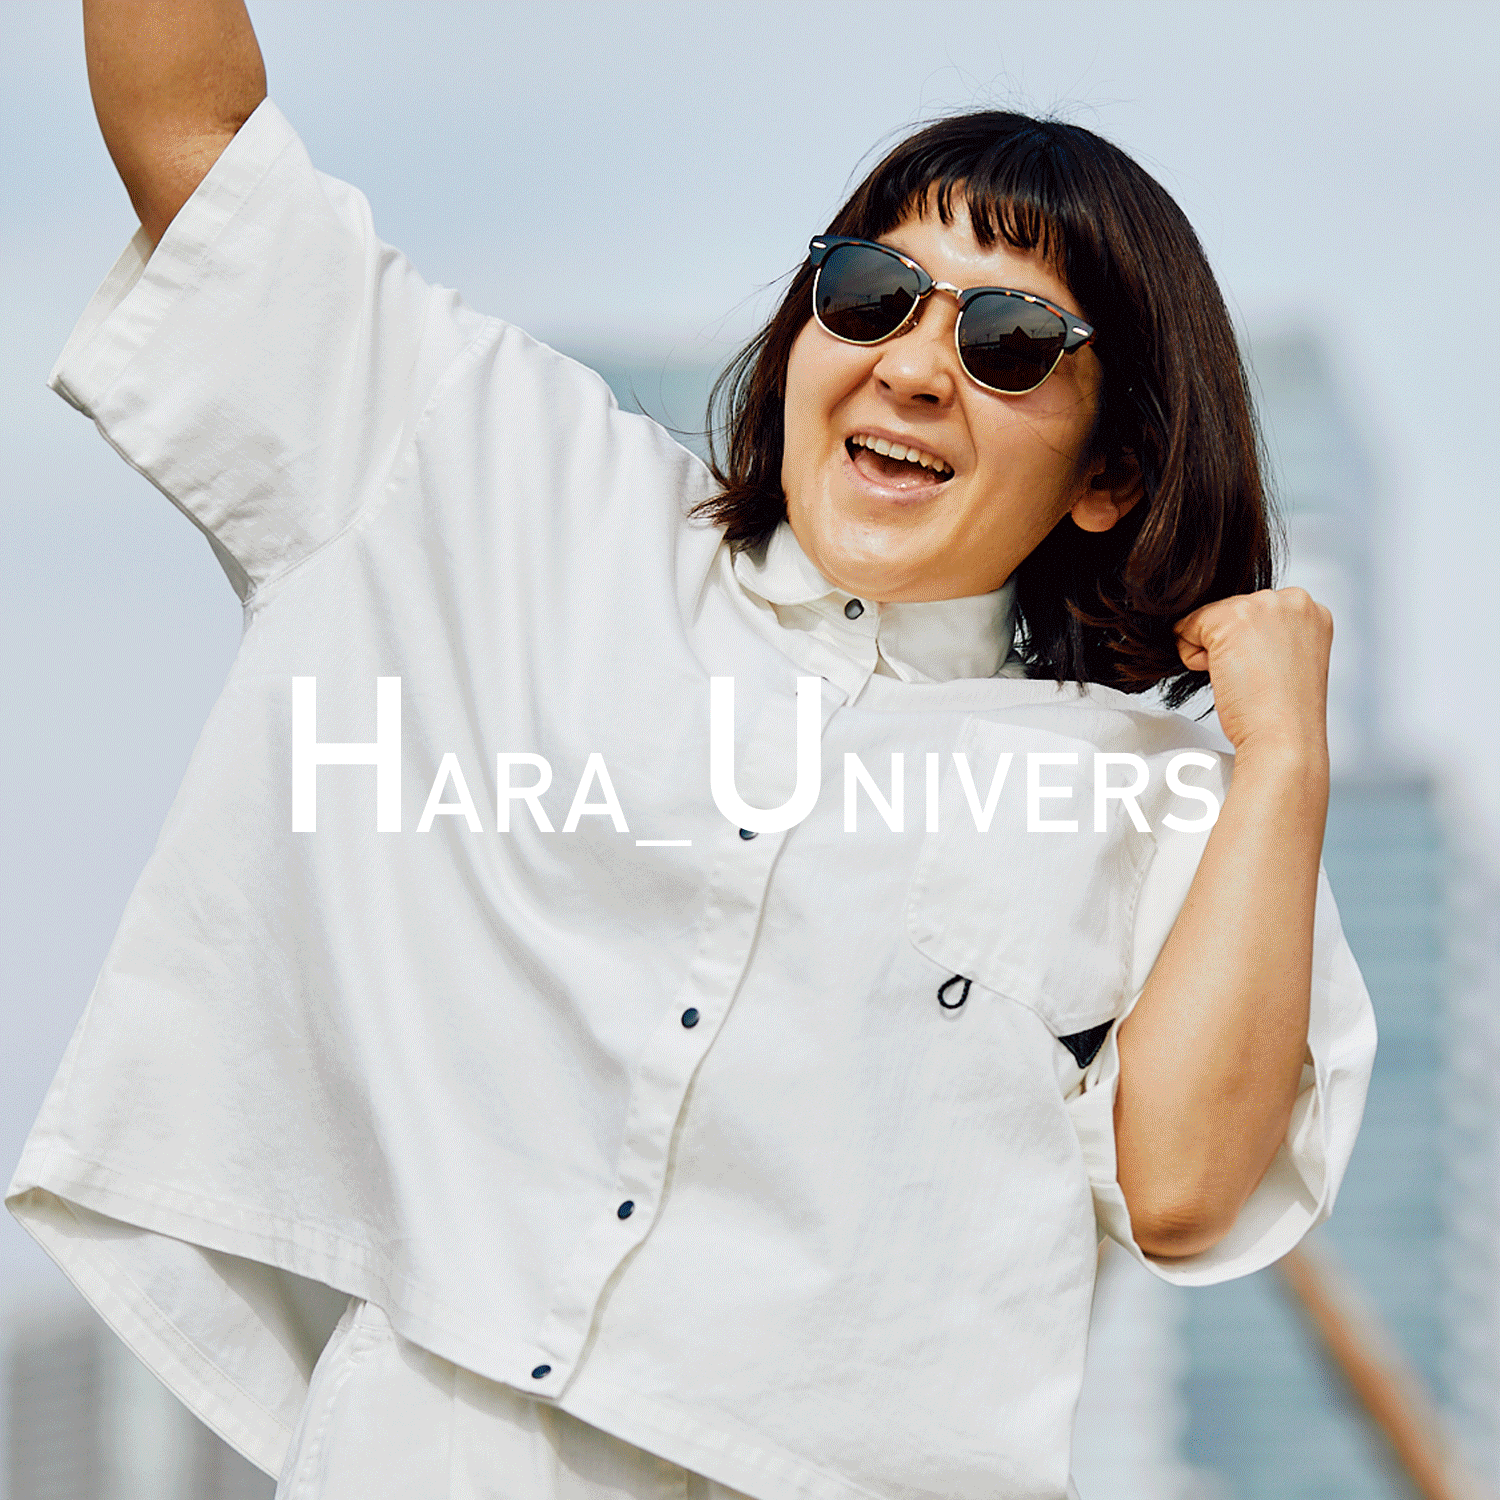 HARA_UNIVERS